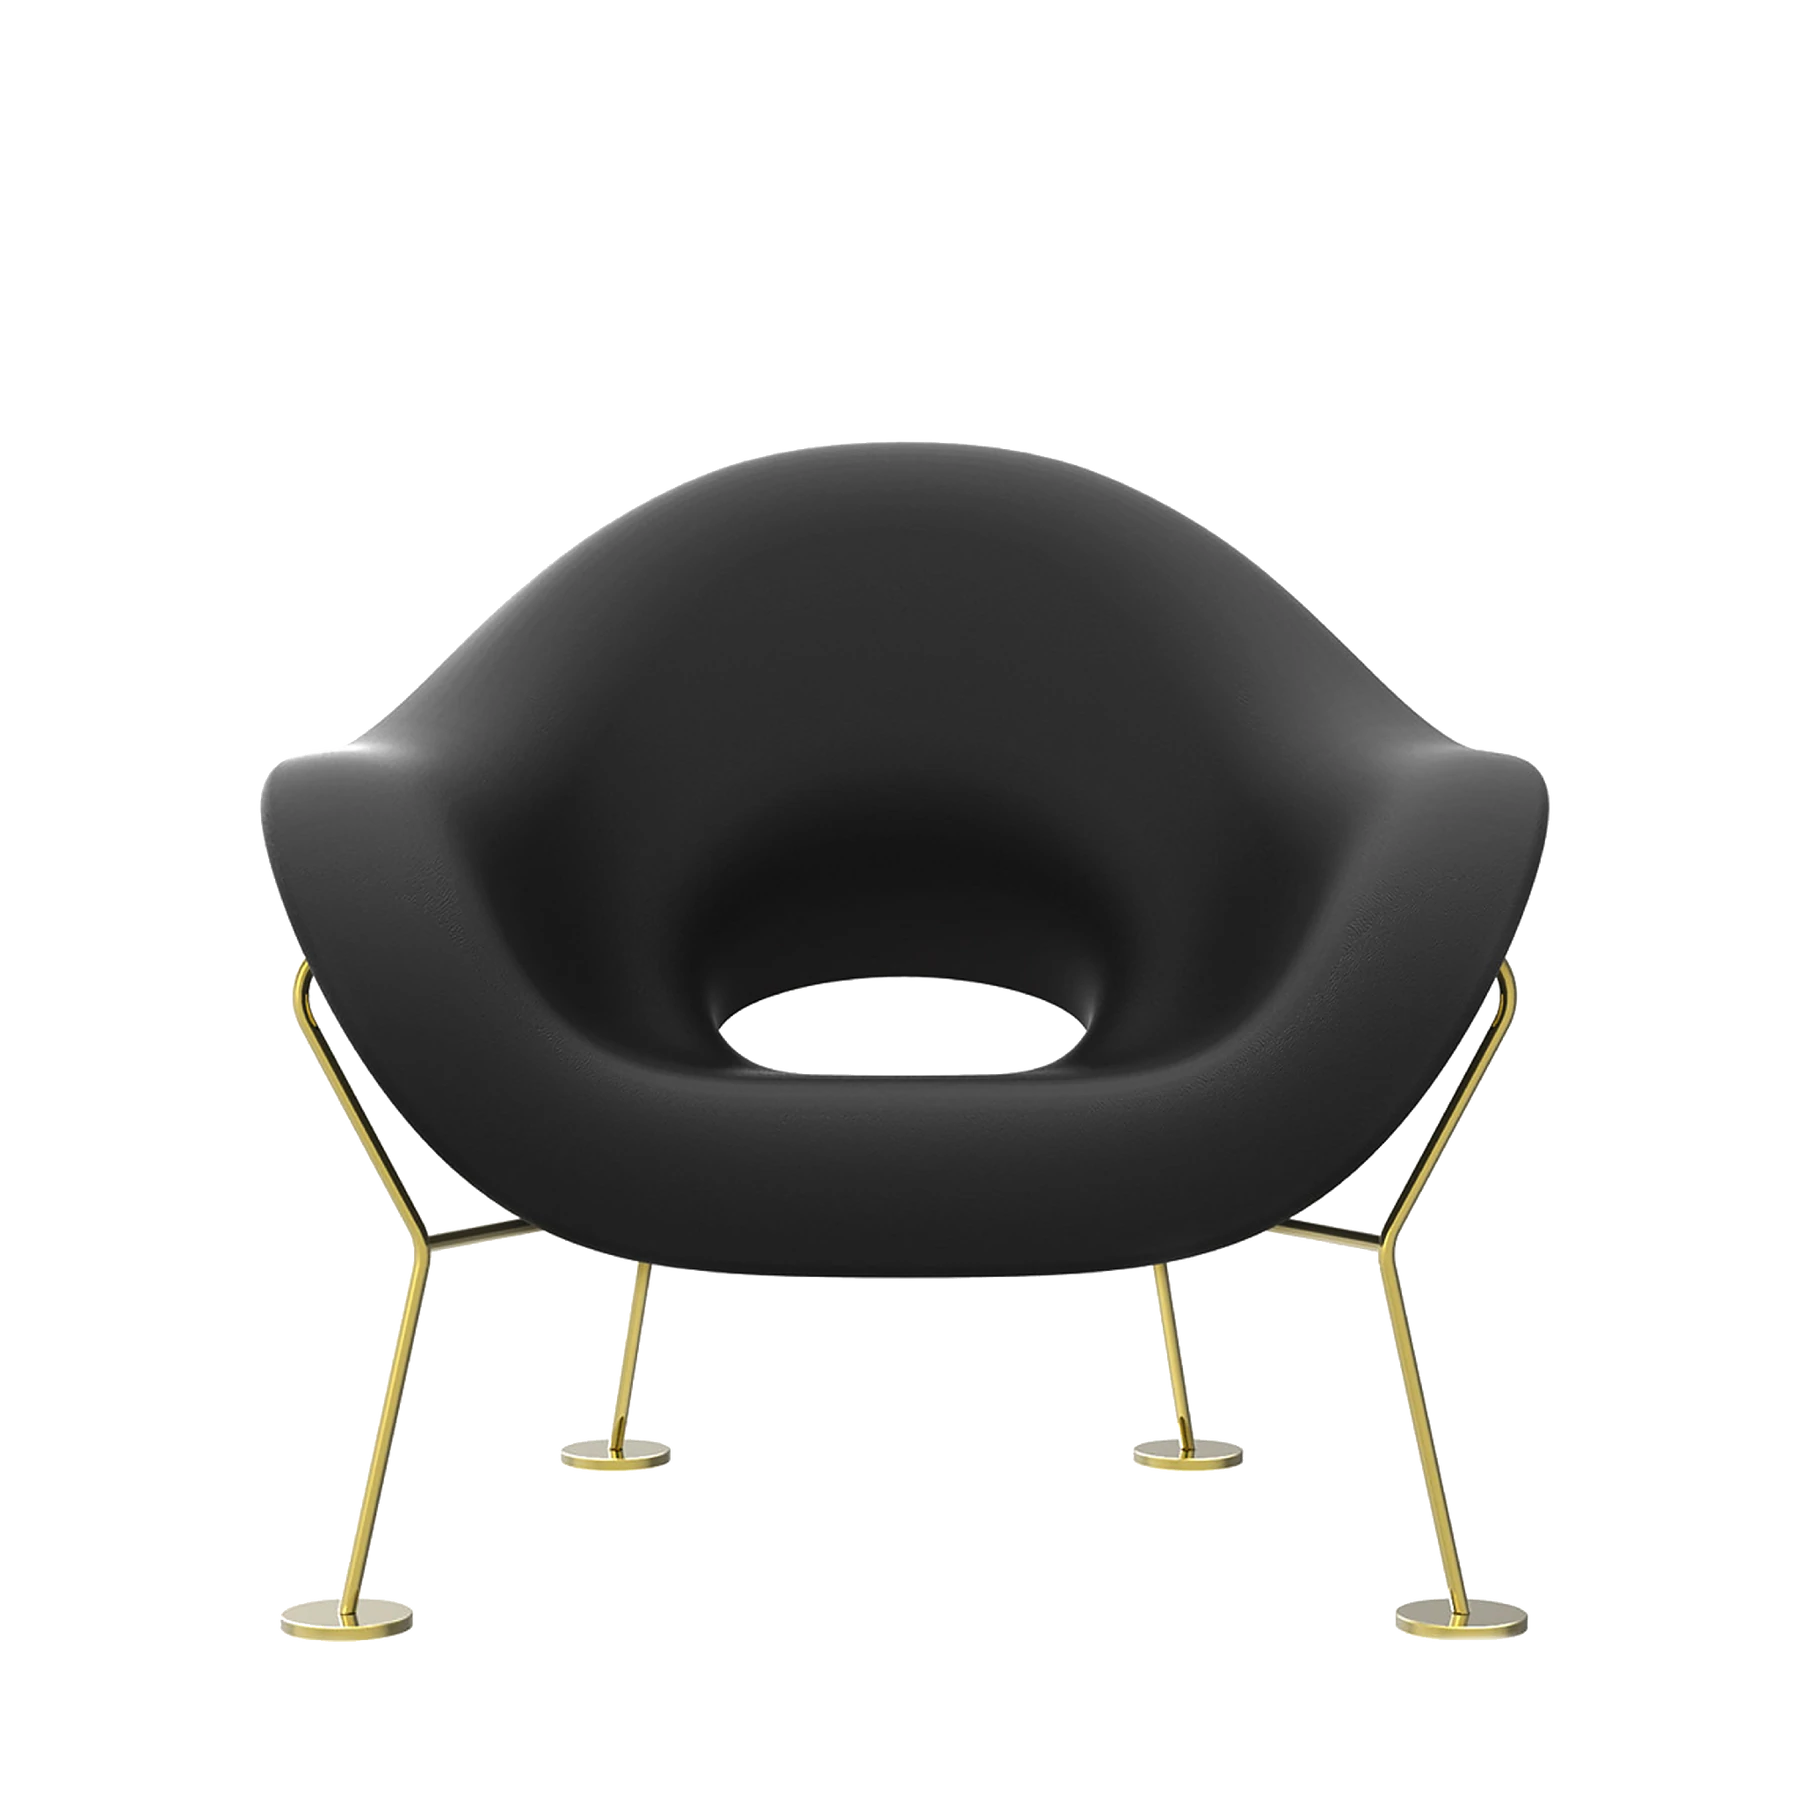 Qeeboo Pupa Lounge Chair by Andrea Branzi